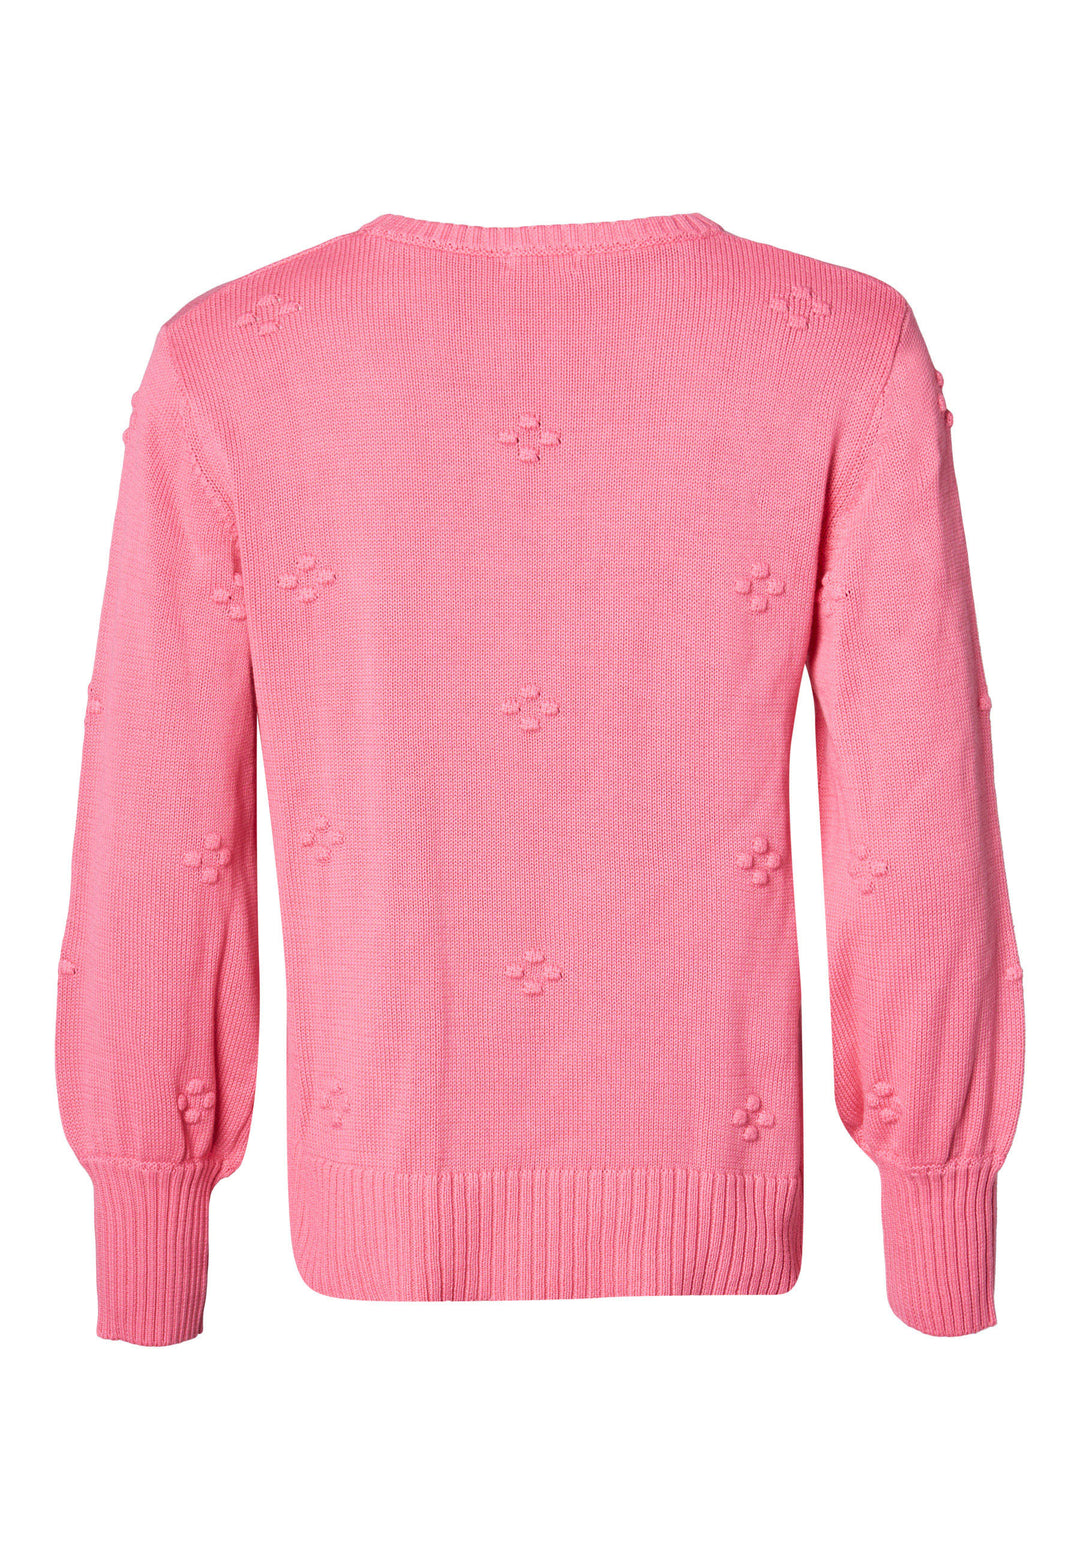 Lind LICamma Knit Pullover 6400 Sorbet Pink